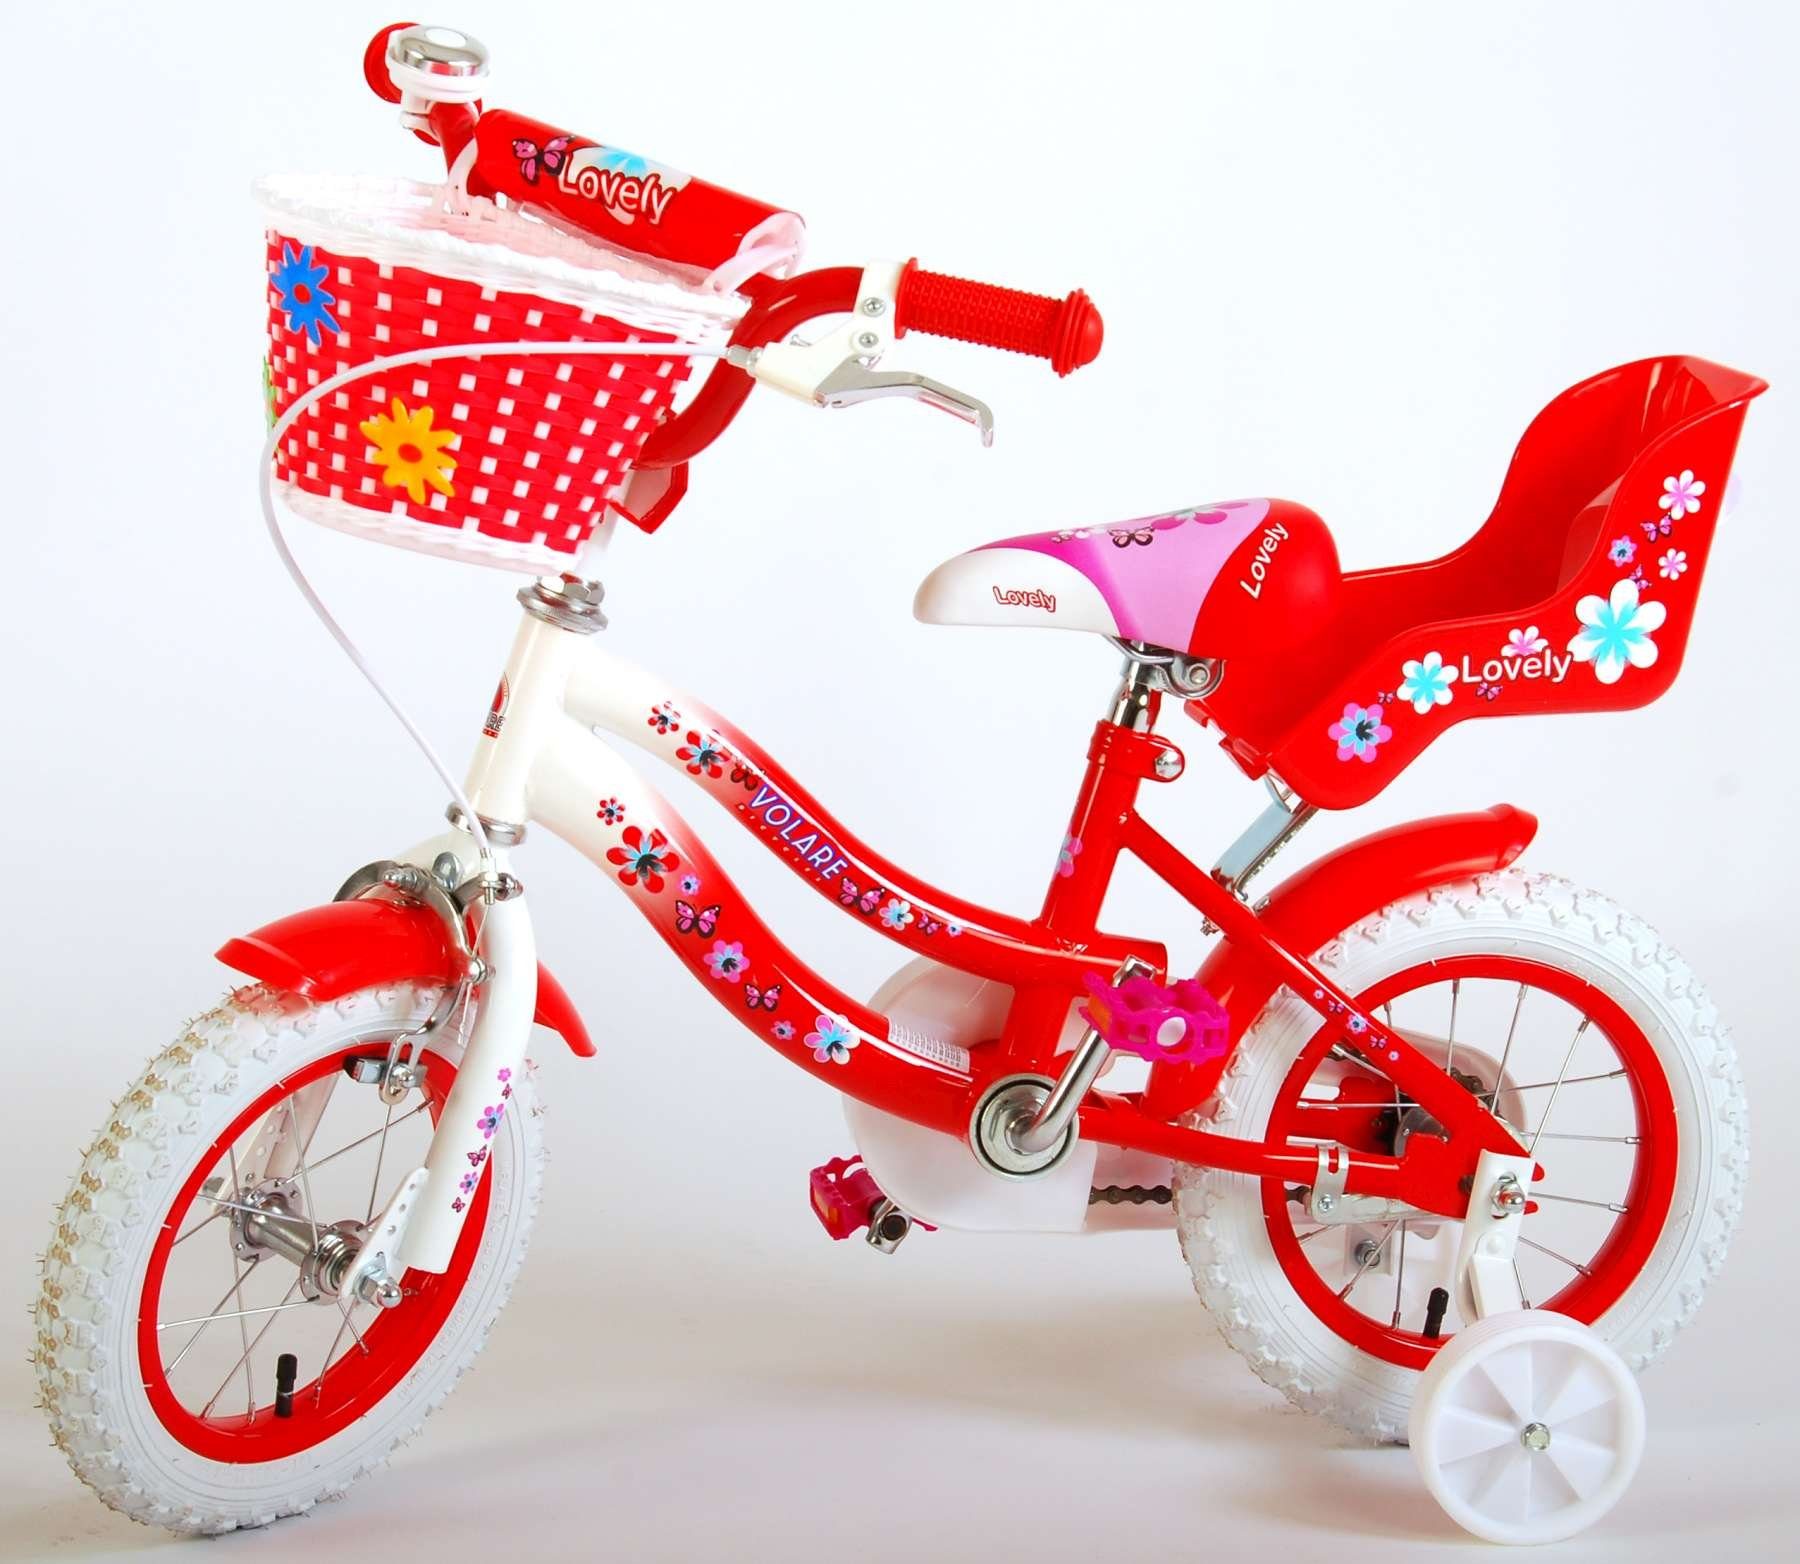 12 - Fahrradkorb Rot Zoll Weiß Mädchen / & LeNoSa Fahrrad Kinderfahrrad Puppensitz